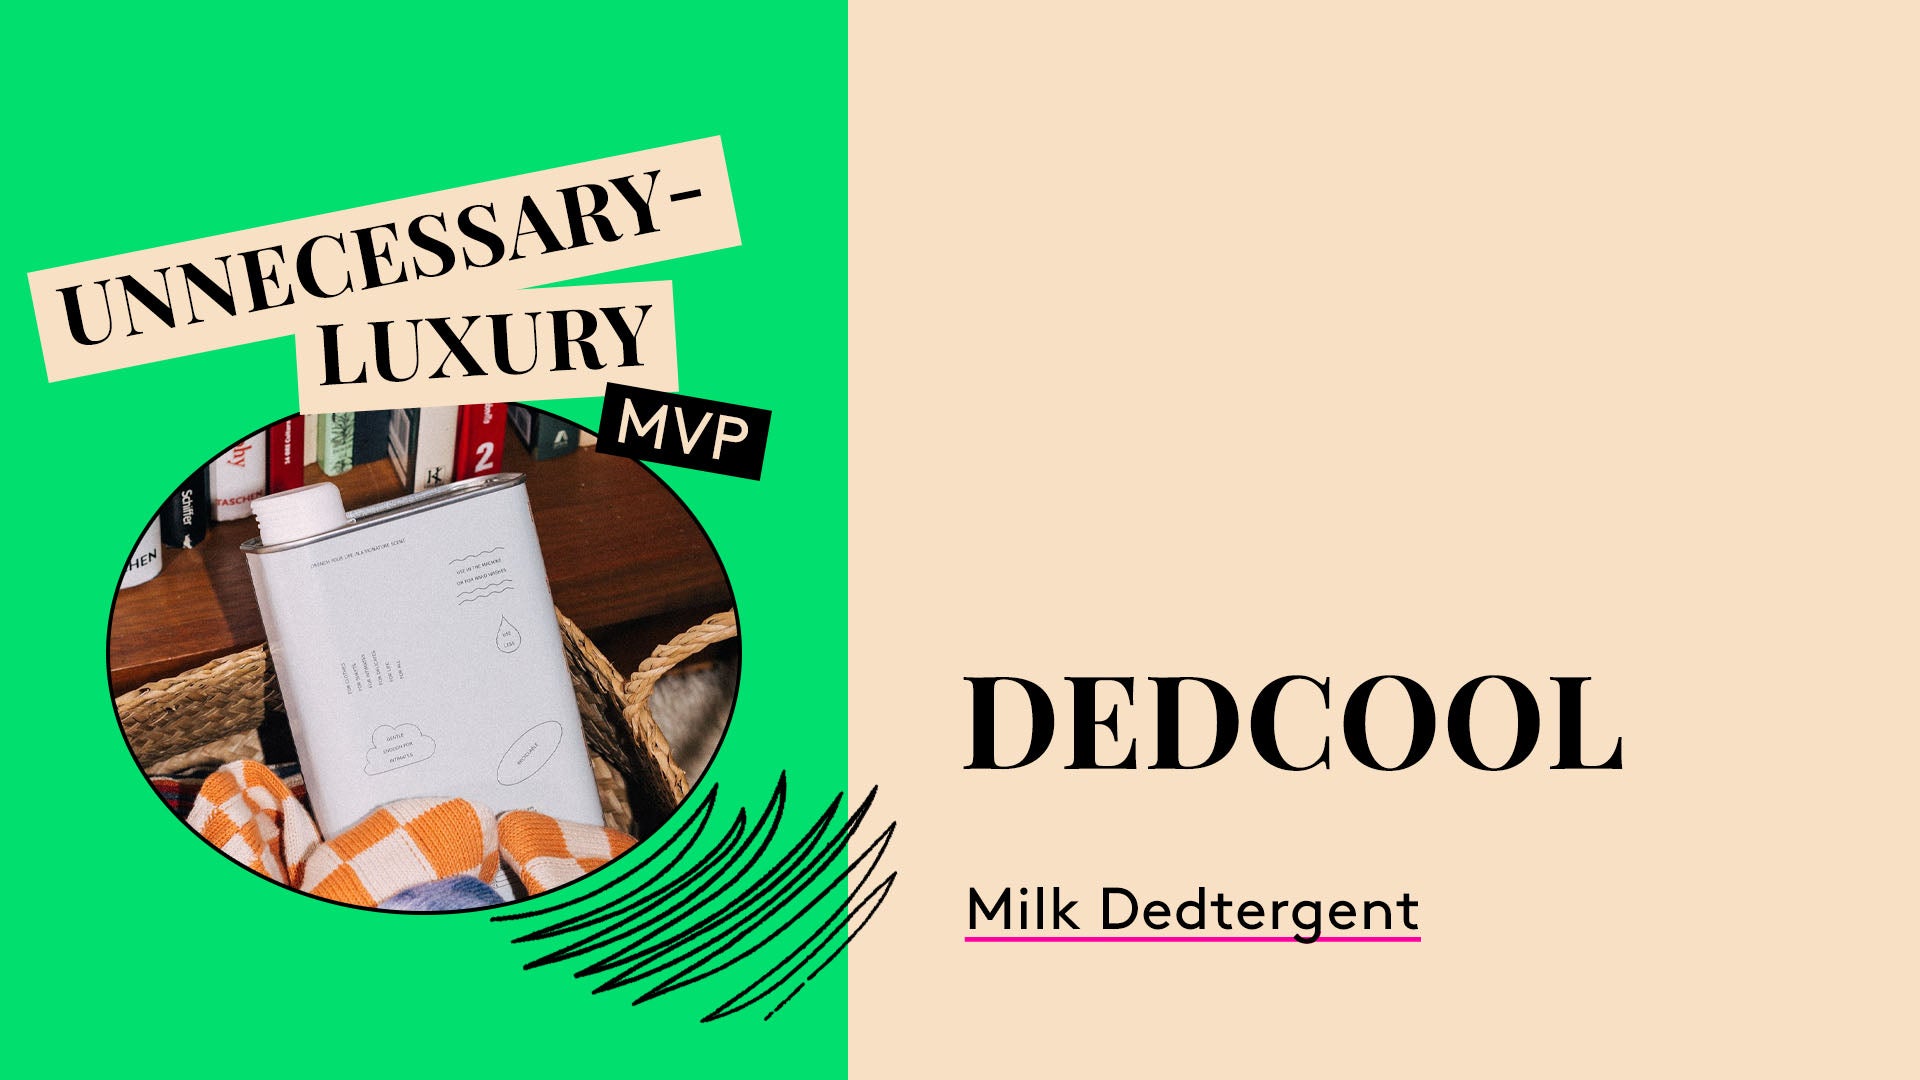 Unnecessary-Luxury MVP. DedCool Milk Dedtergent.